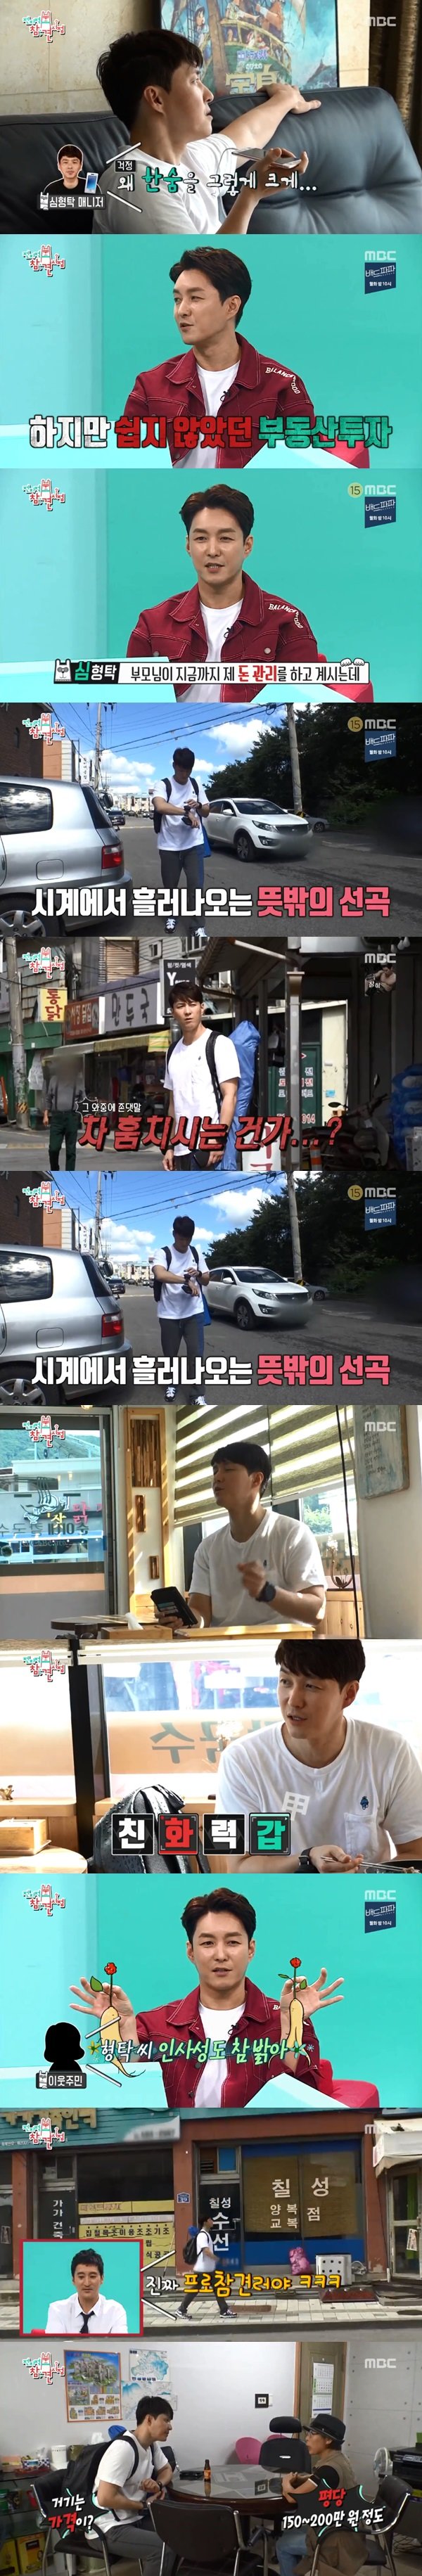 MBC ‘전지적 참견 시점’ 방송 화면 캡처© News1